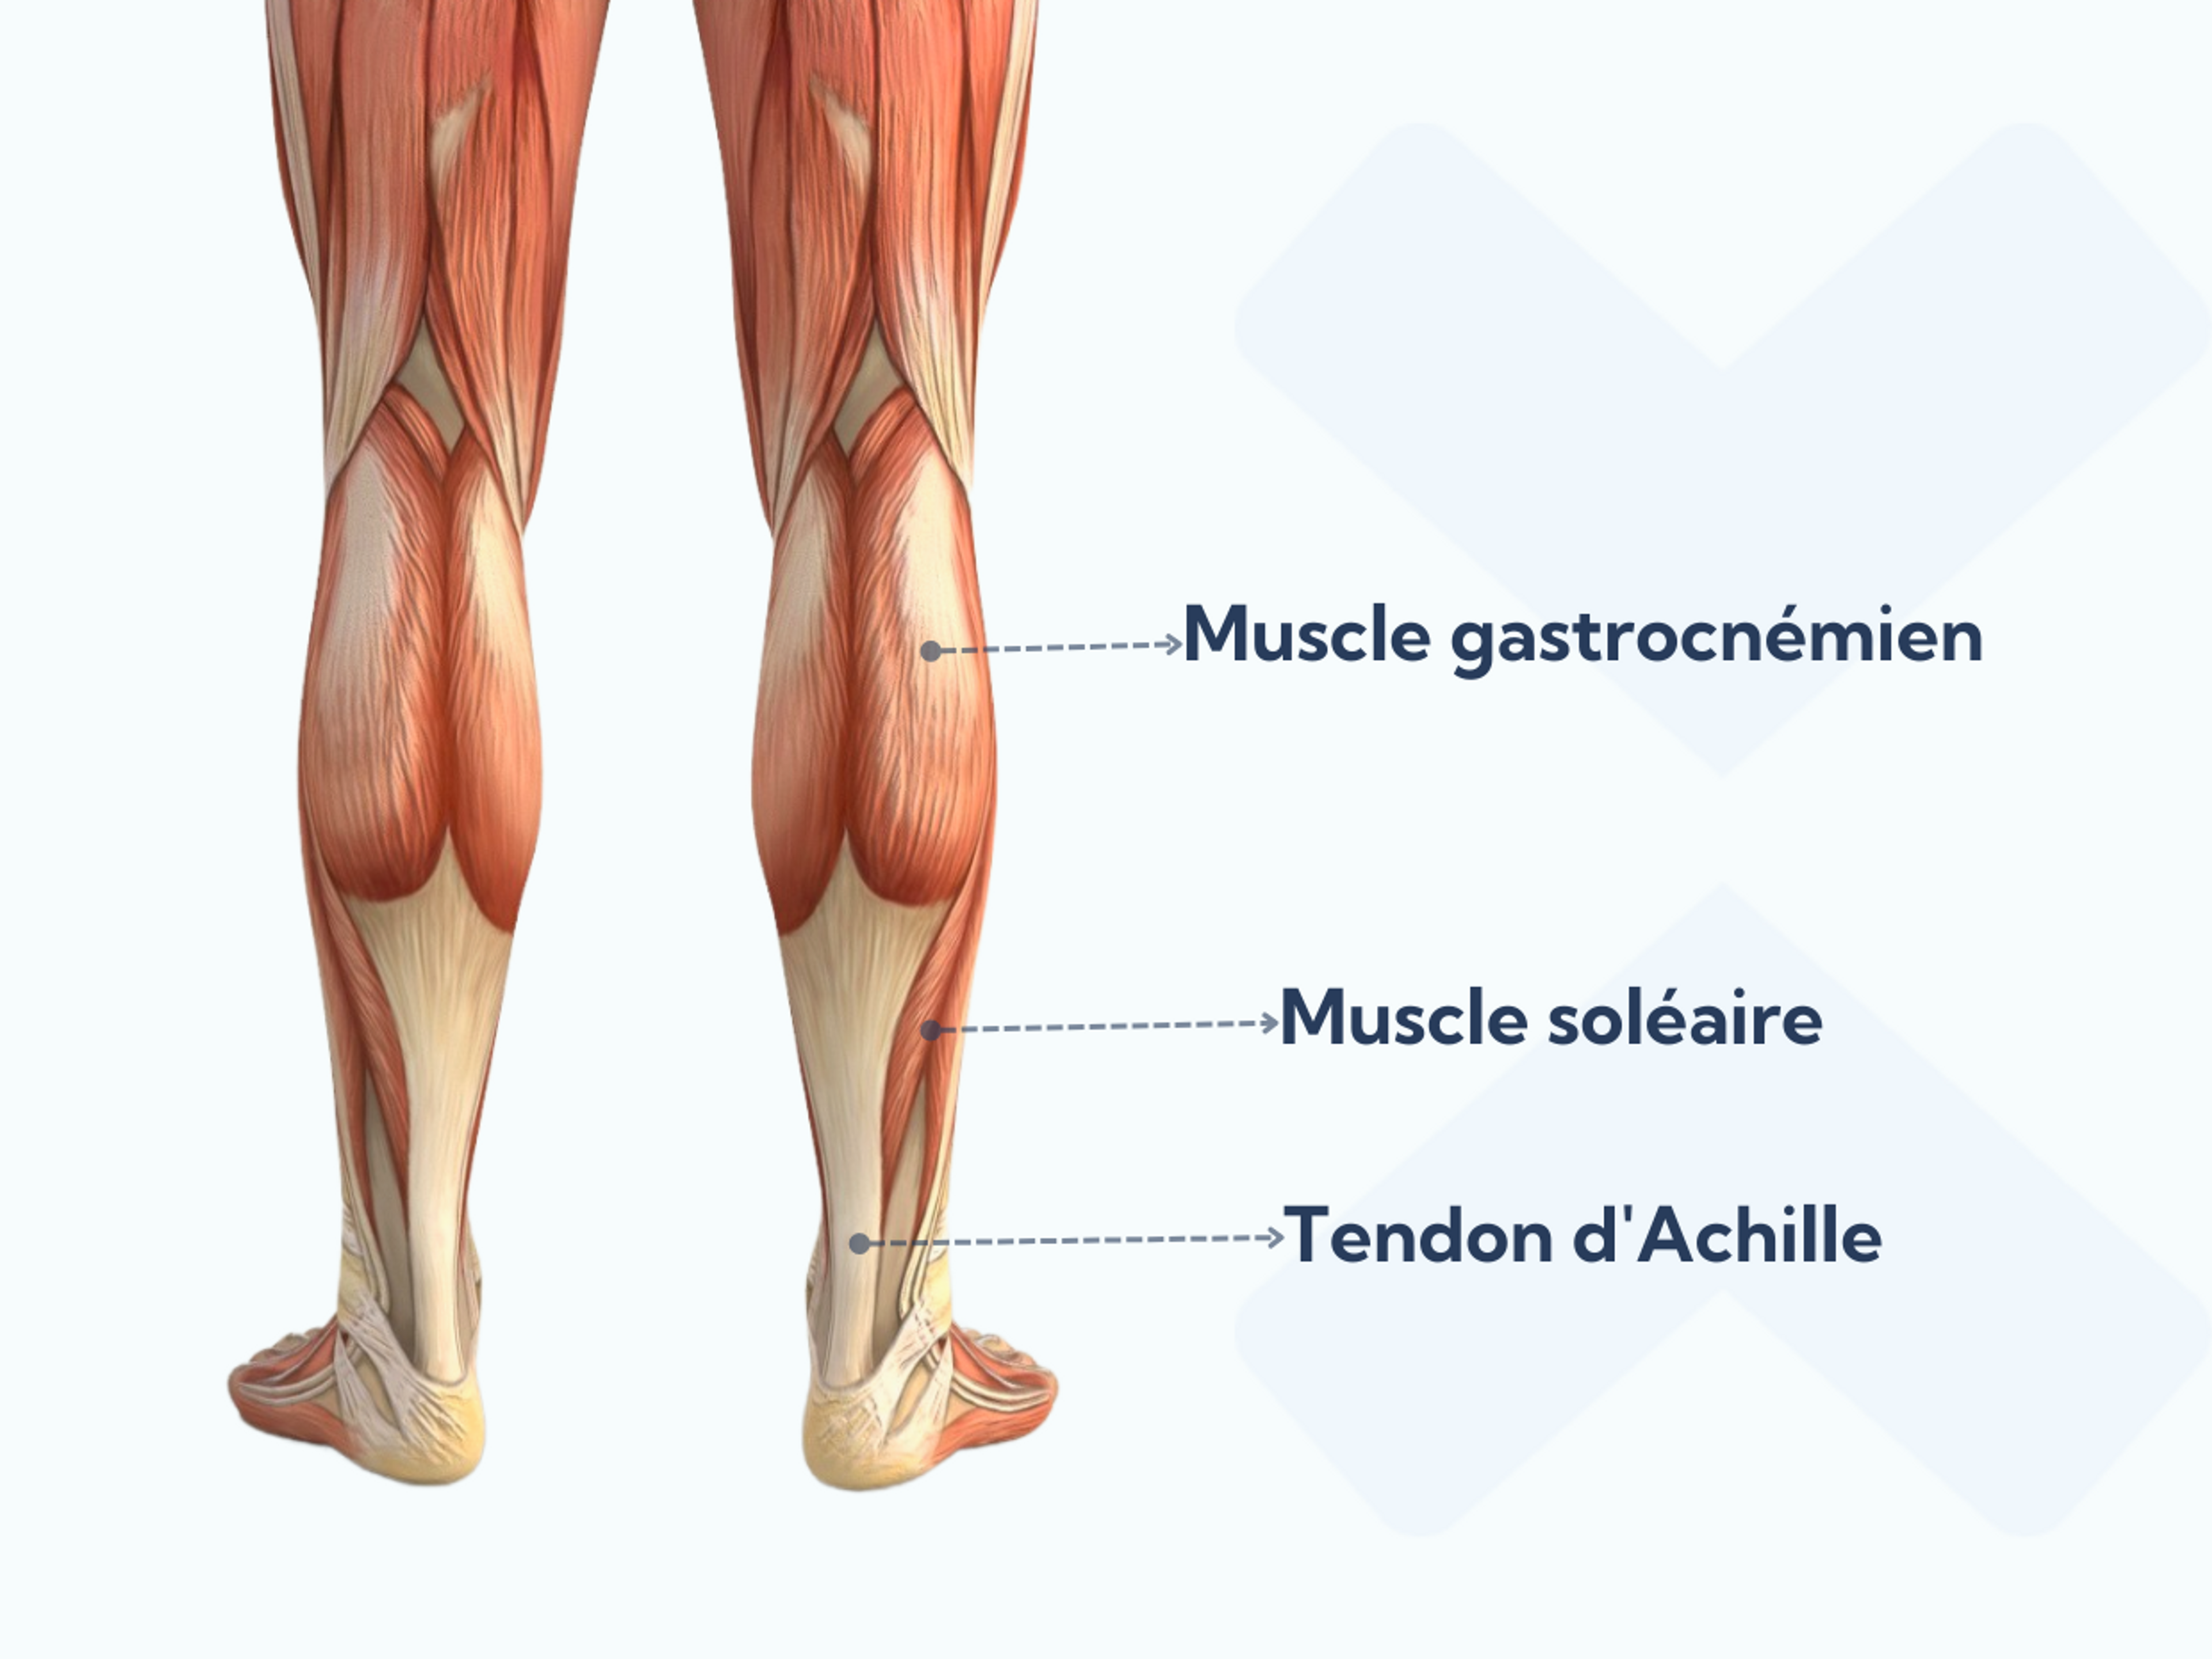 Anatomie desc muscles du mollet et du tendon d'Achille